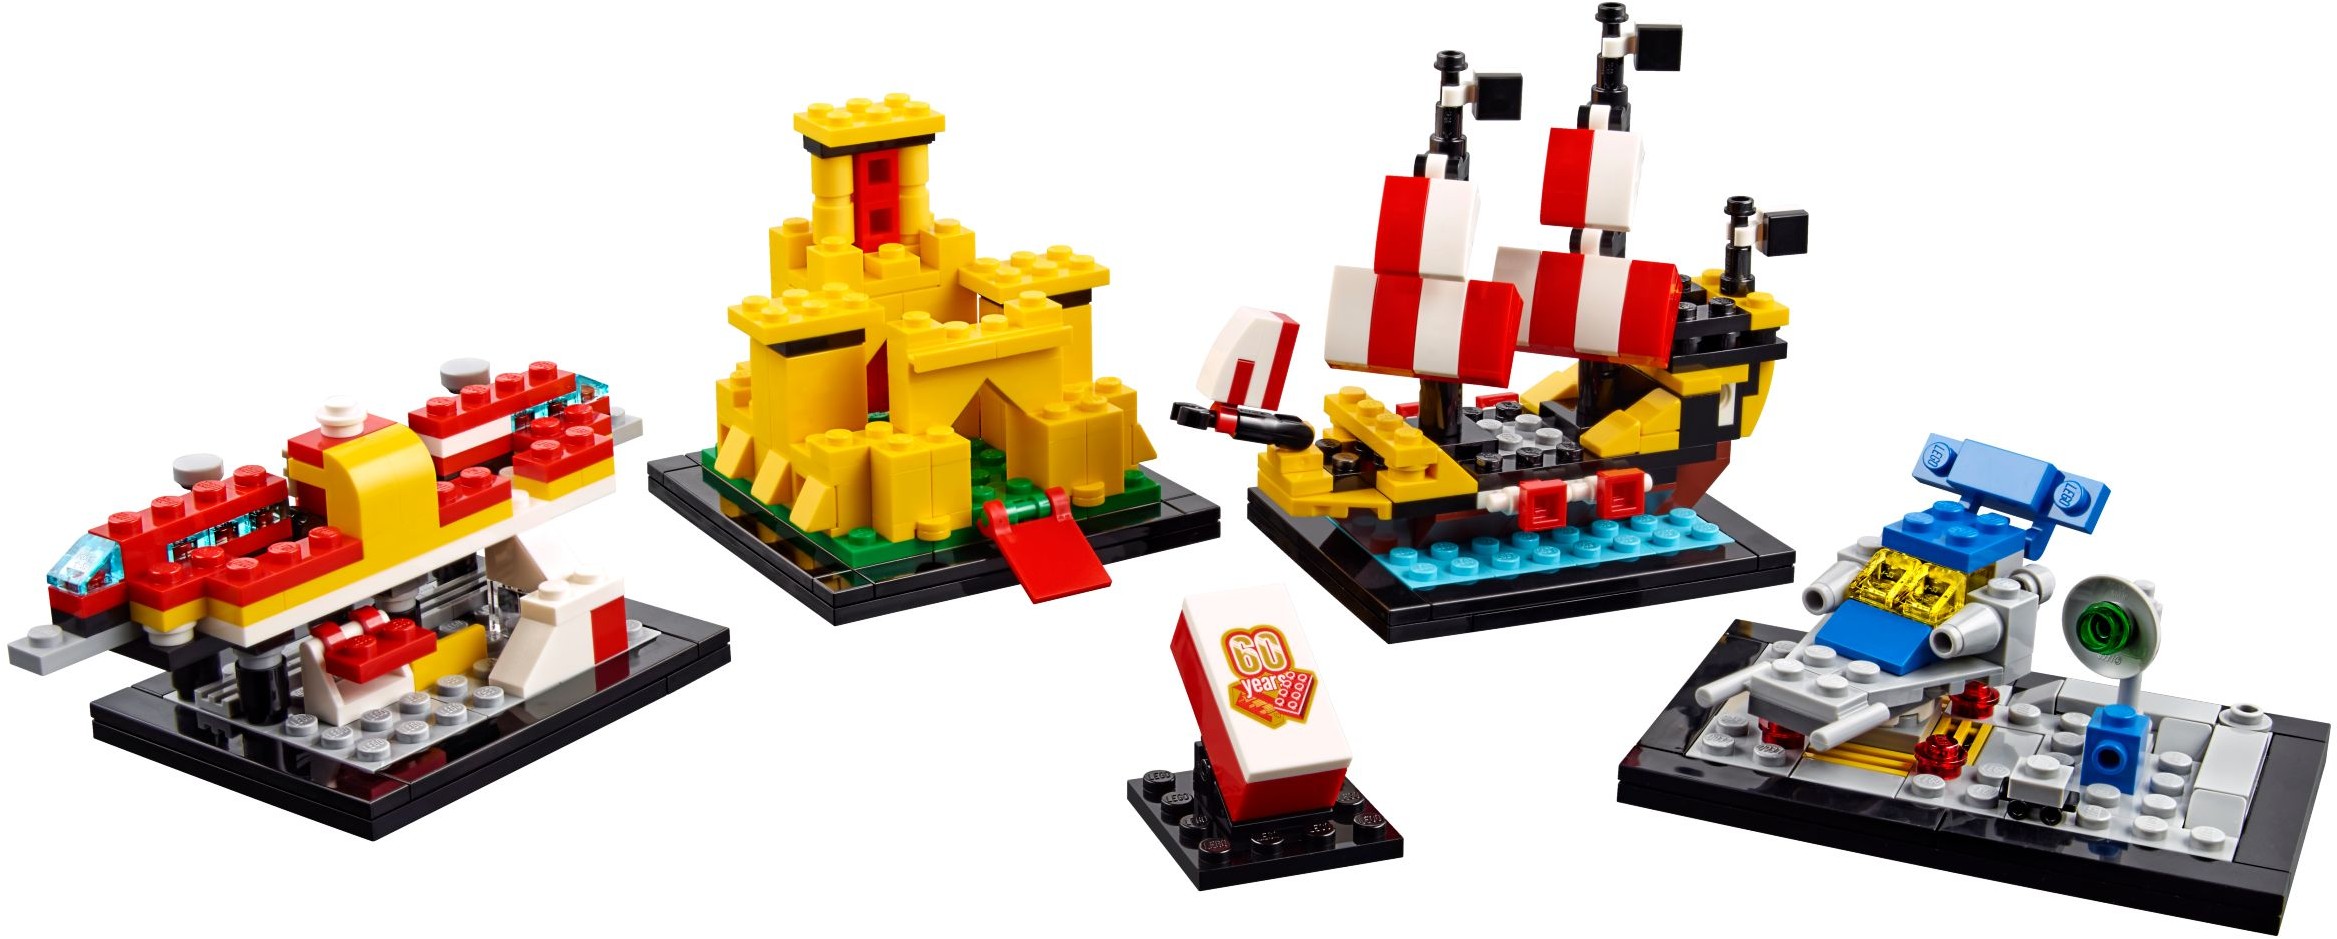 Promotional | 2018 | Brickset: LEGO set 